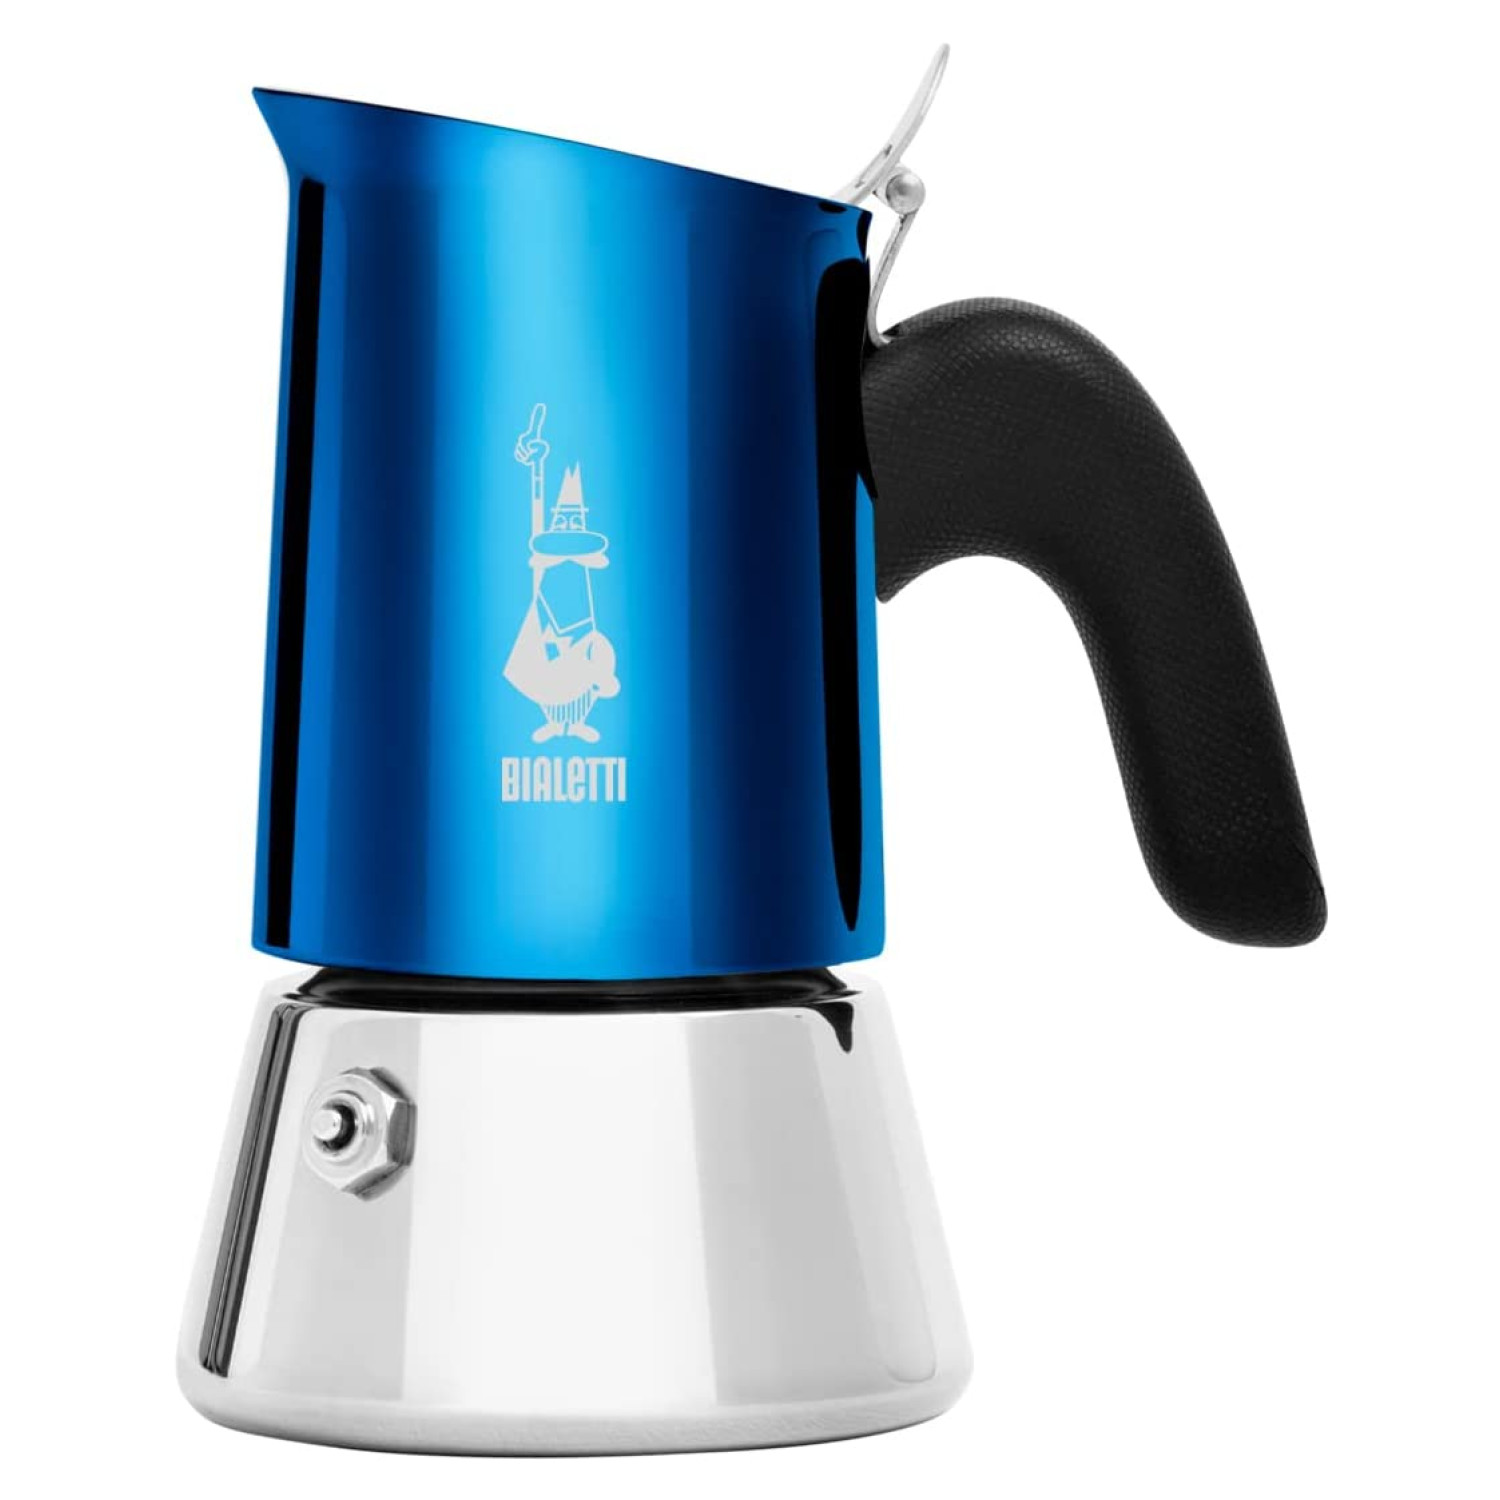 2 New Tassen Venus BIALETTI BLUE für Blau/Silber Espressokocher